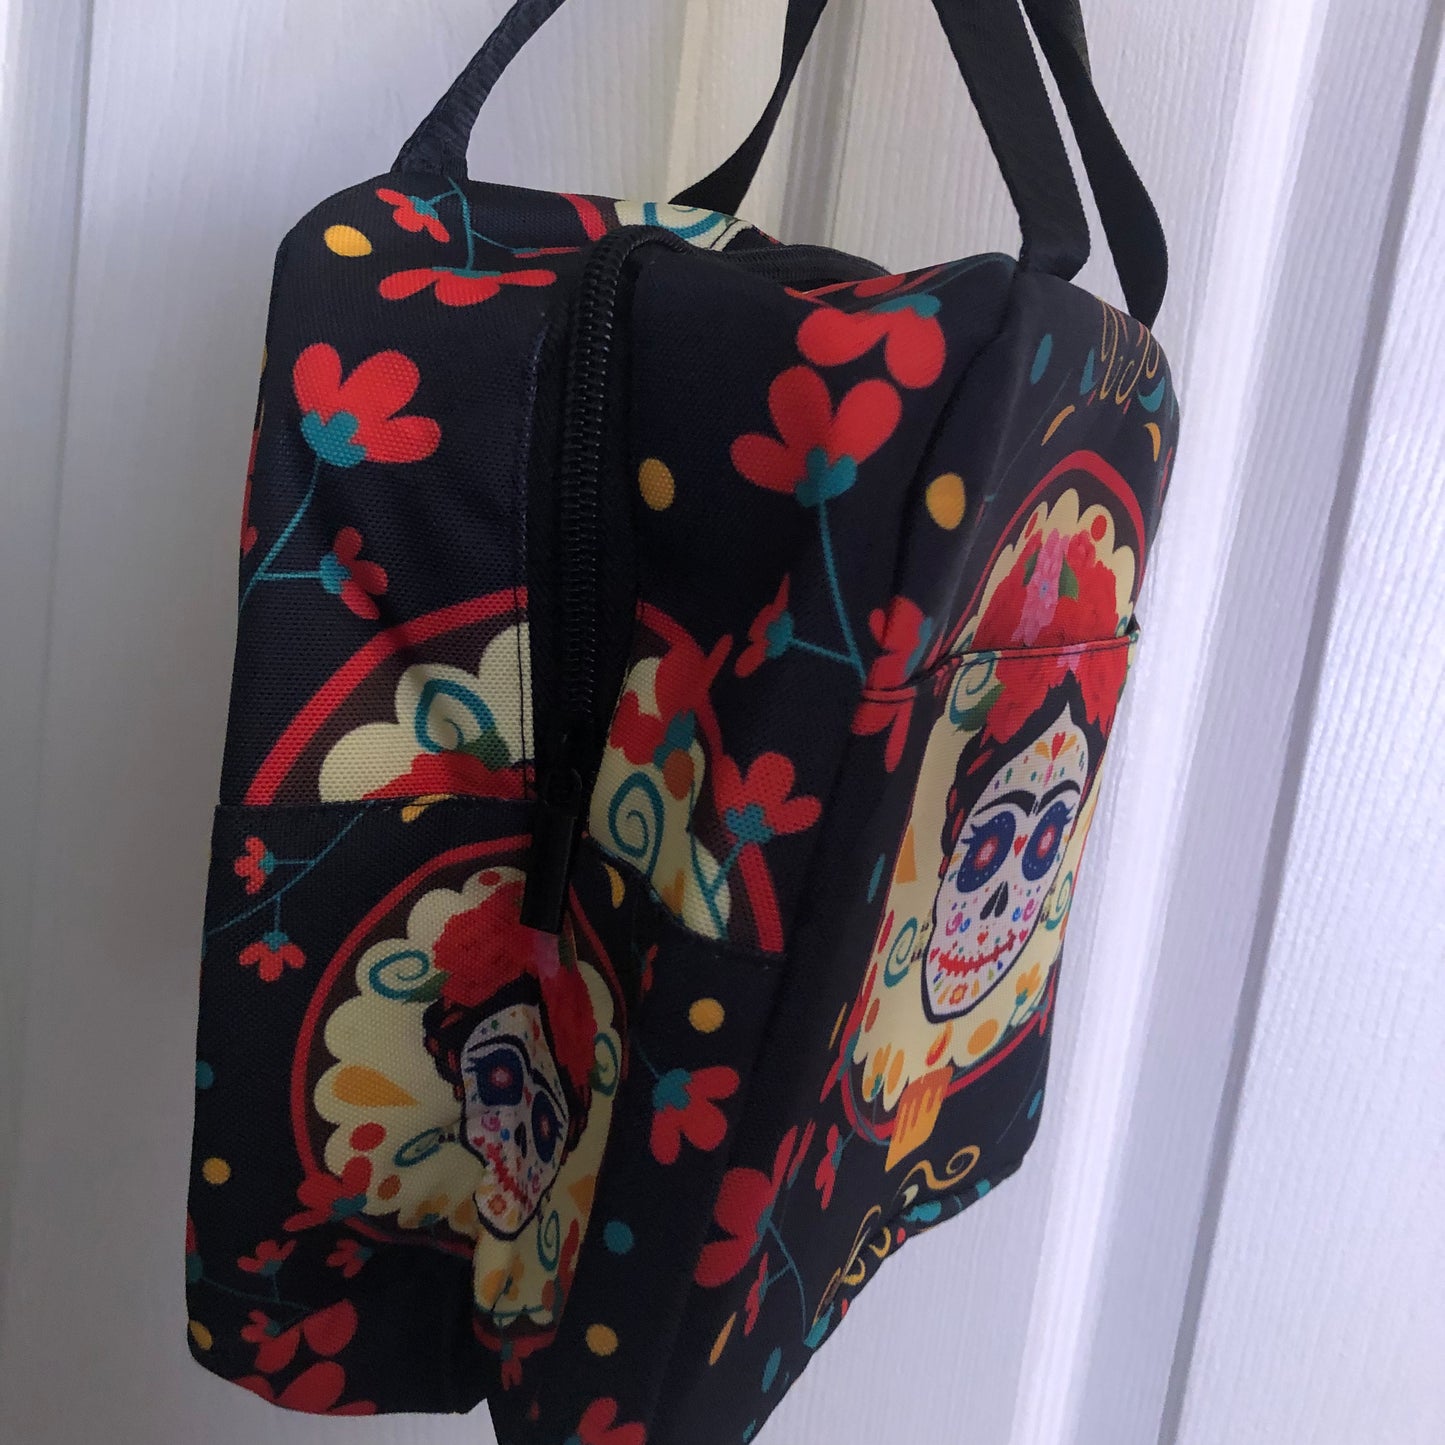 Frida Kahlo Día De Los Muertos lunch bag tote bag purse